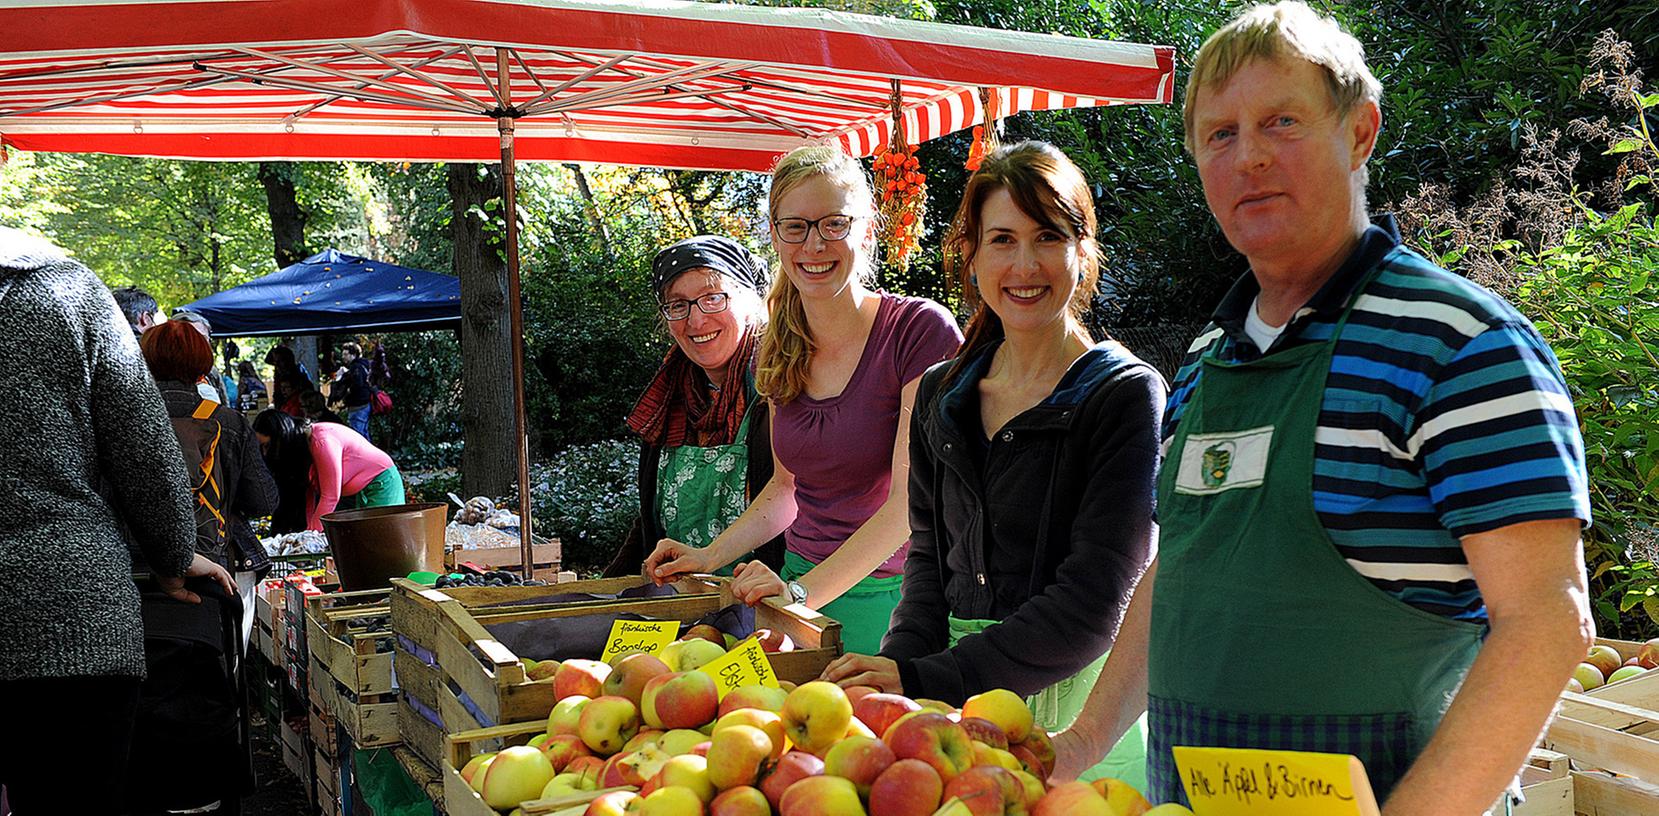 Äpfel aus Franken konnten auf dem Apfelmarkt im Fürther Stadtpark gekauft werden.